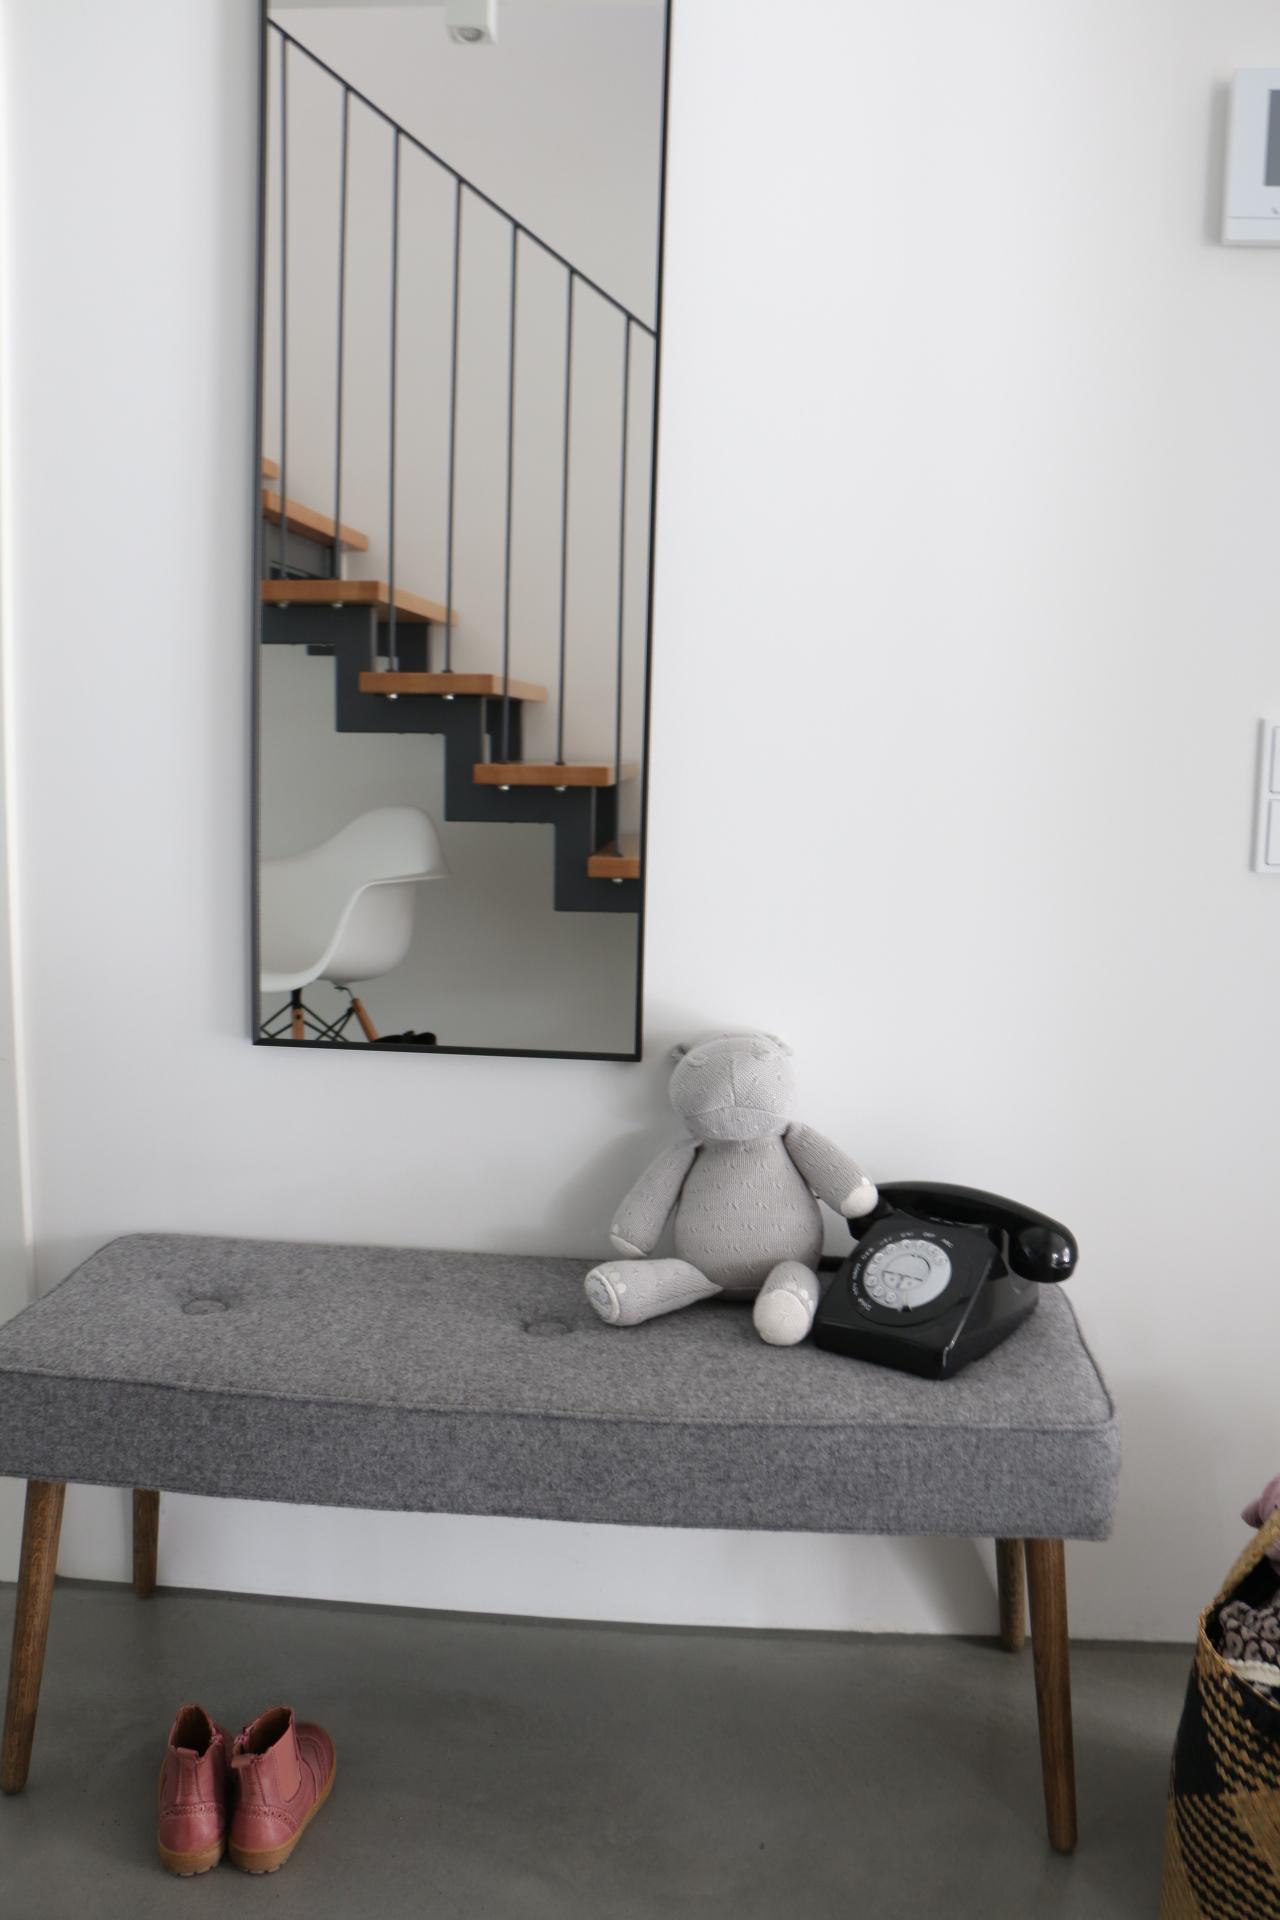 Aufgeräumt II.
#homestory #vondirinspiriert #flur #treppenhaus #spiegel #minimalismus #puristisch #grau #deko